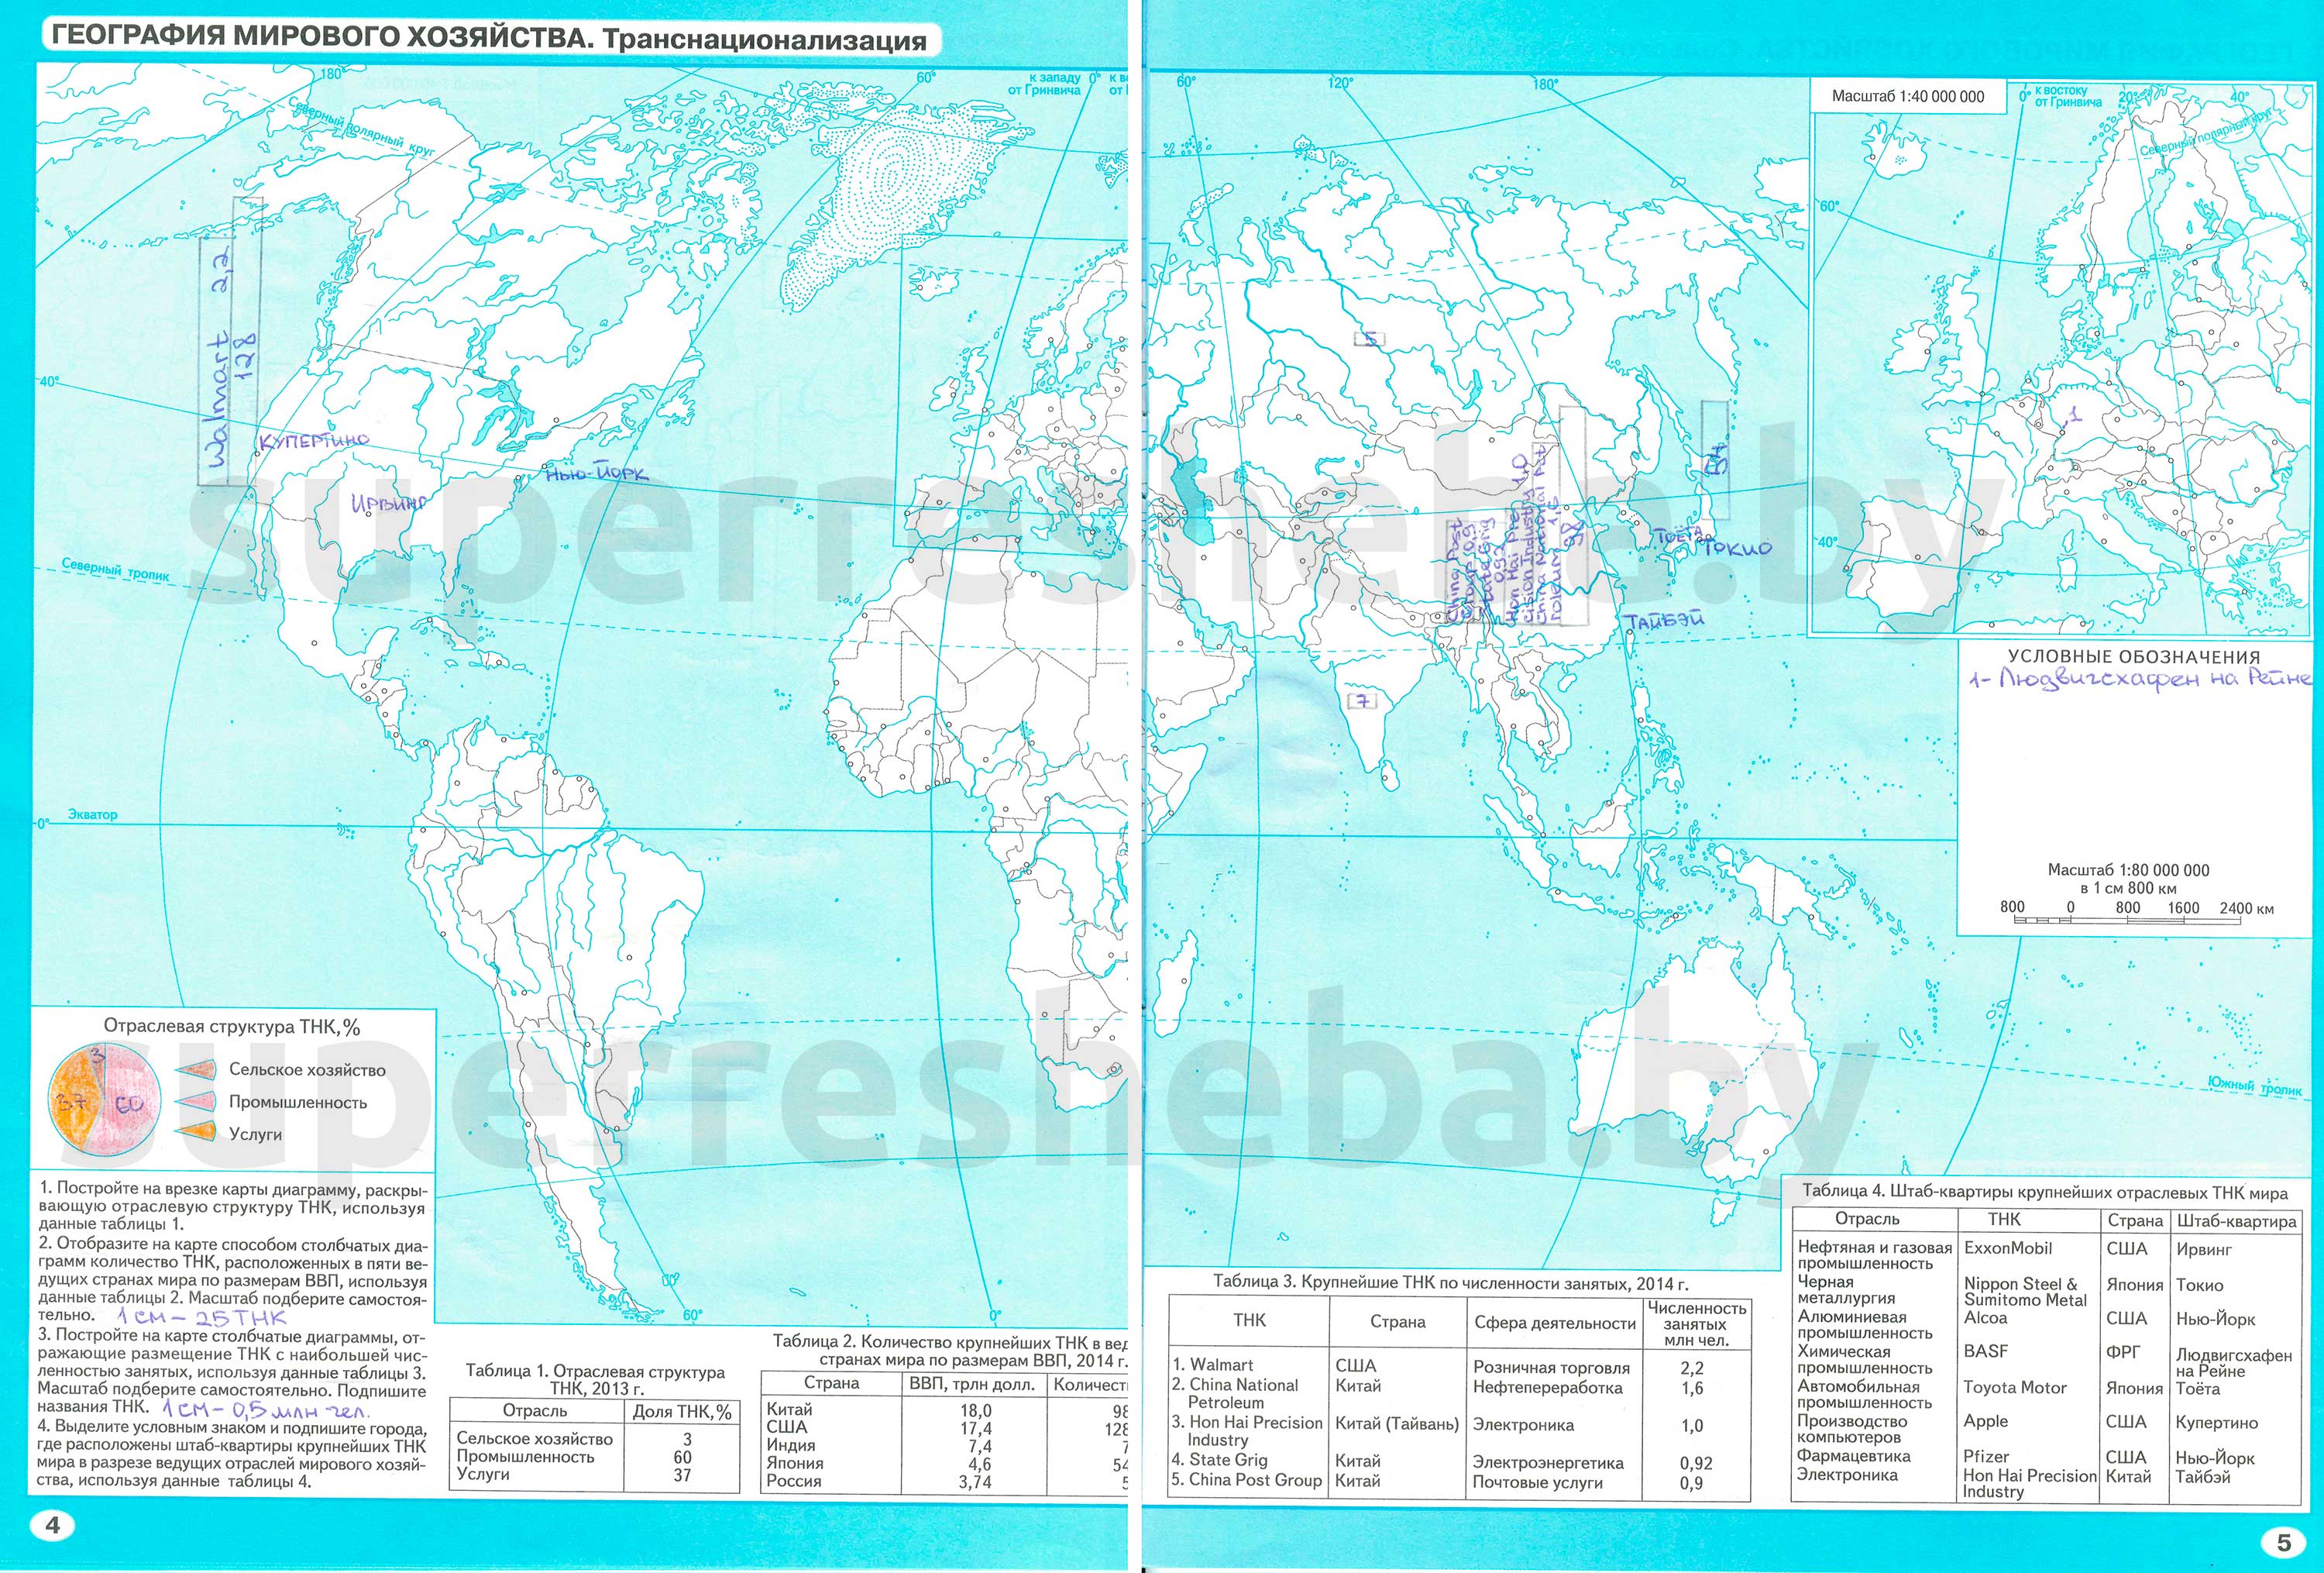 Контурная карта, задания по темам: География мирового хозяйства. Современная структура мирового хозяйства, с. 2-3 - решение